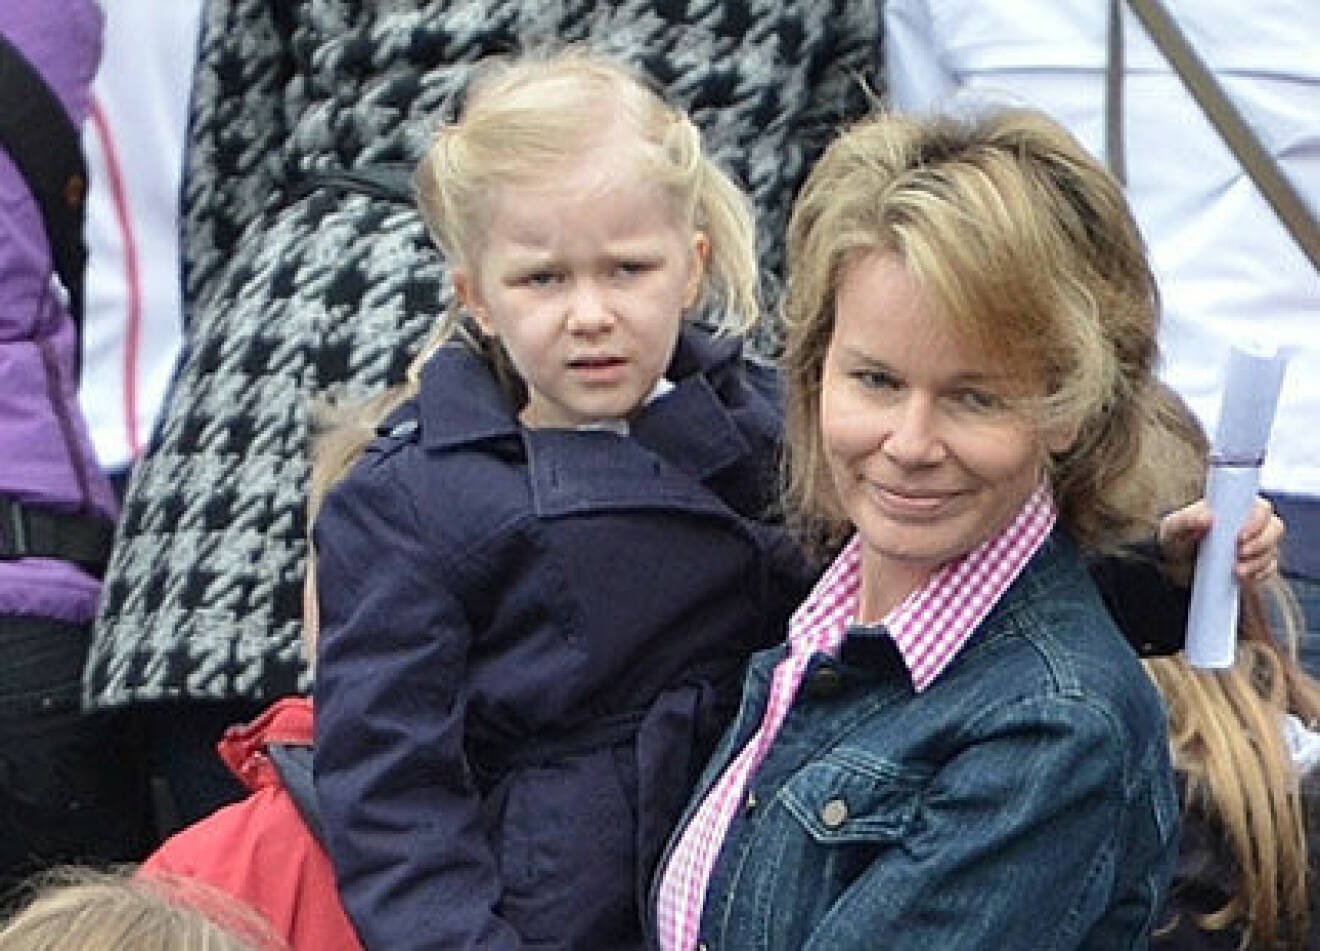 Kronprinsessan Mathilde tog med barnen och tittade på när äkta maken sprang löptävling